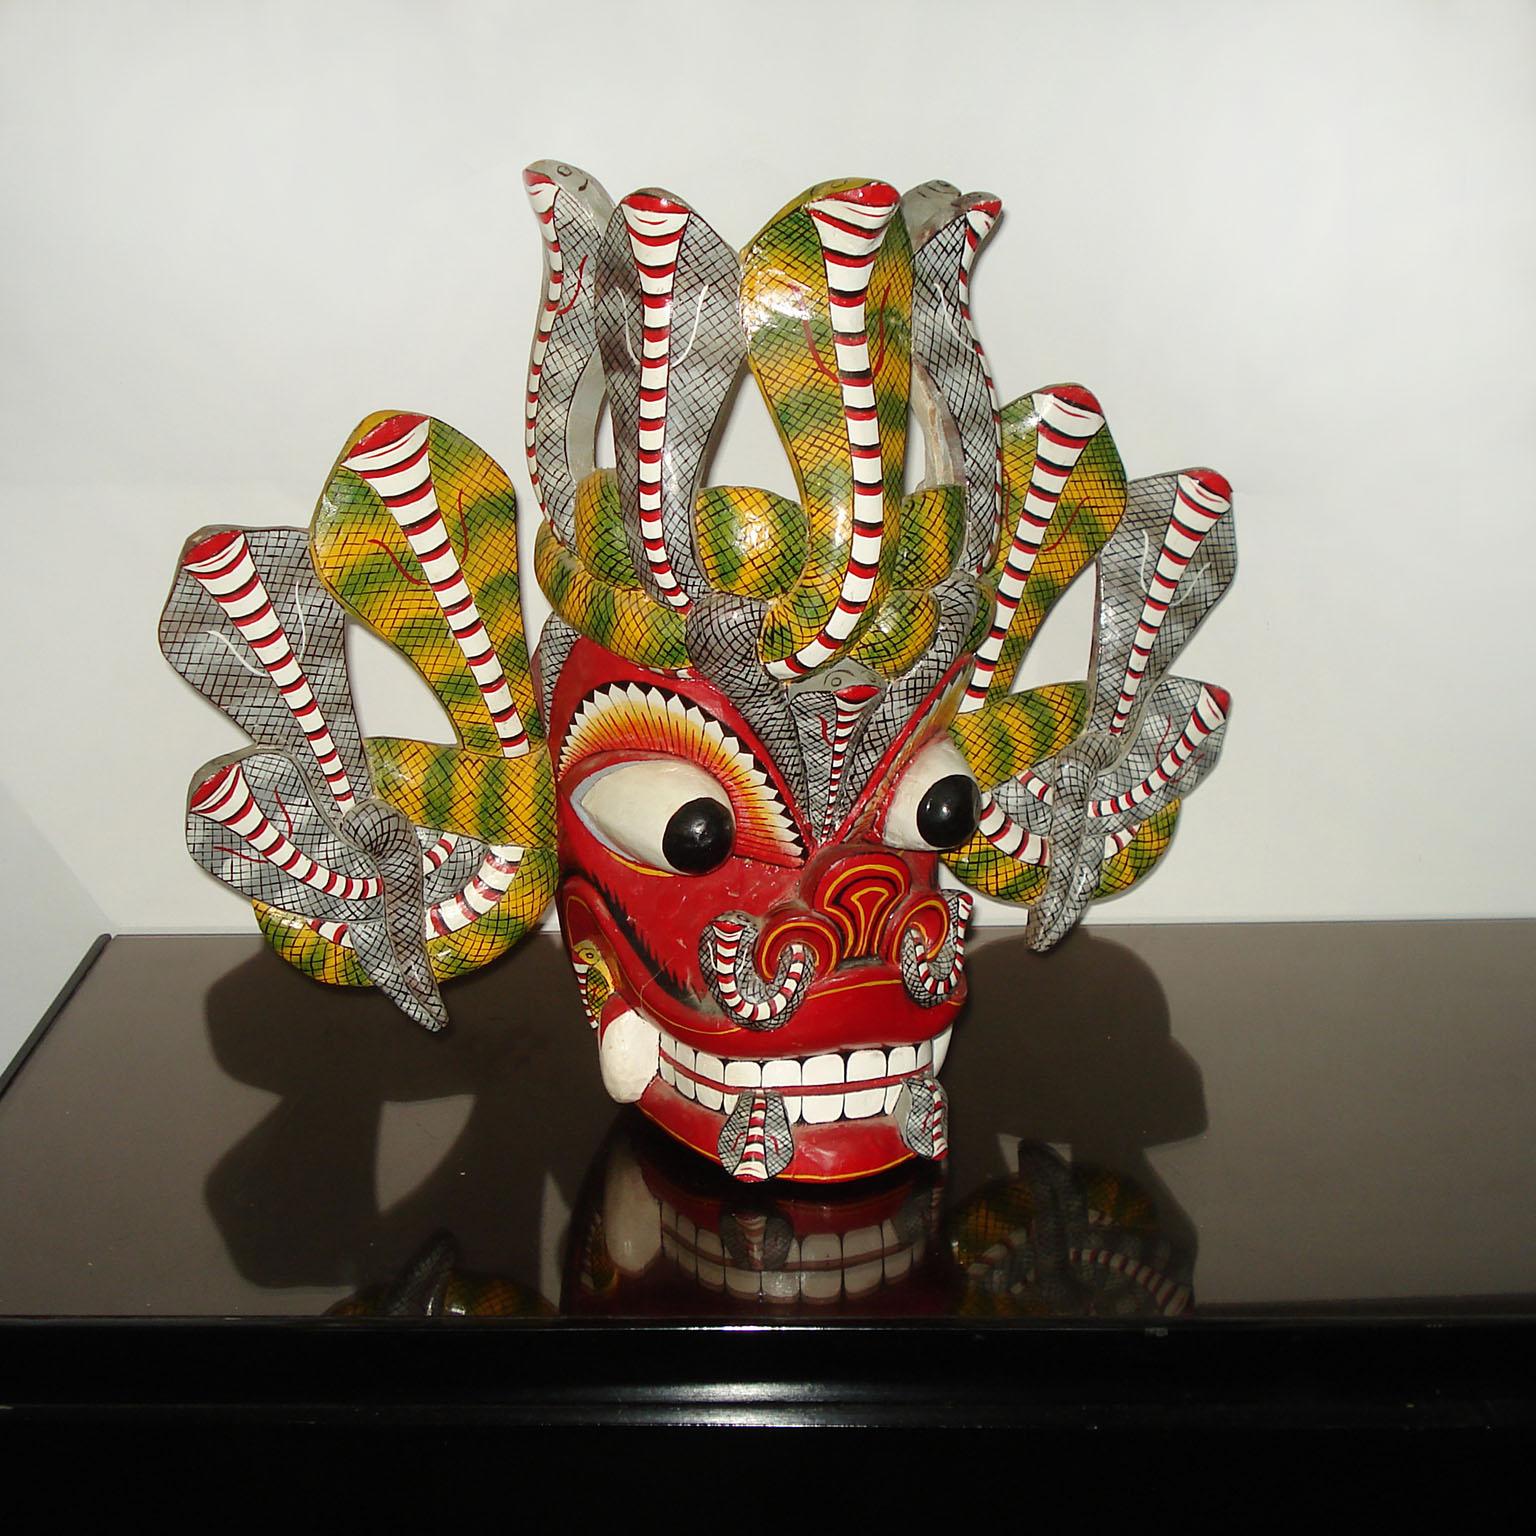 Grand masque de danse balinais Barong en bois sculpté et peint à la main représentant une créature mythologique colorée et ornée.
Habilement sculpté à la main, avec de grands yeux globuleux, de grandes dents et deux serpents dépassant de chaque